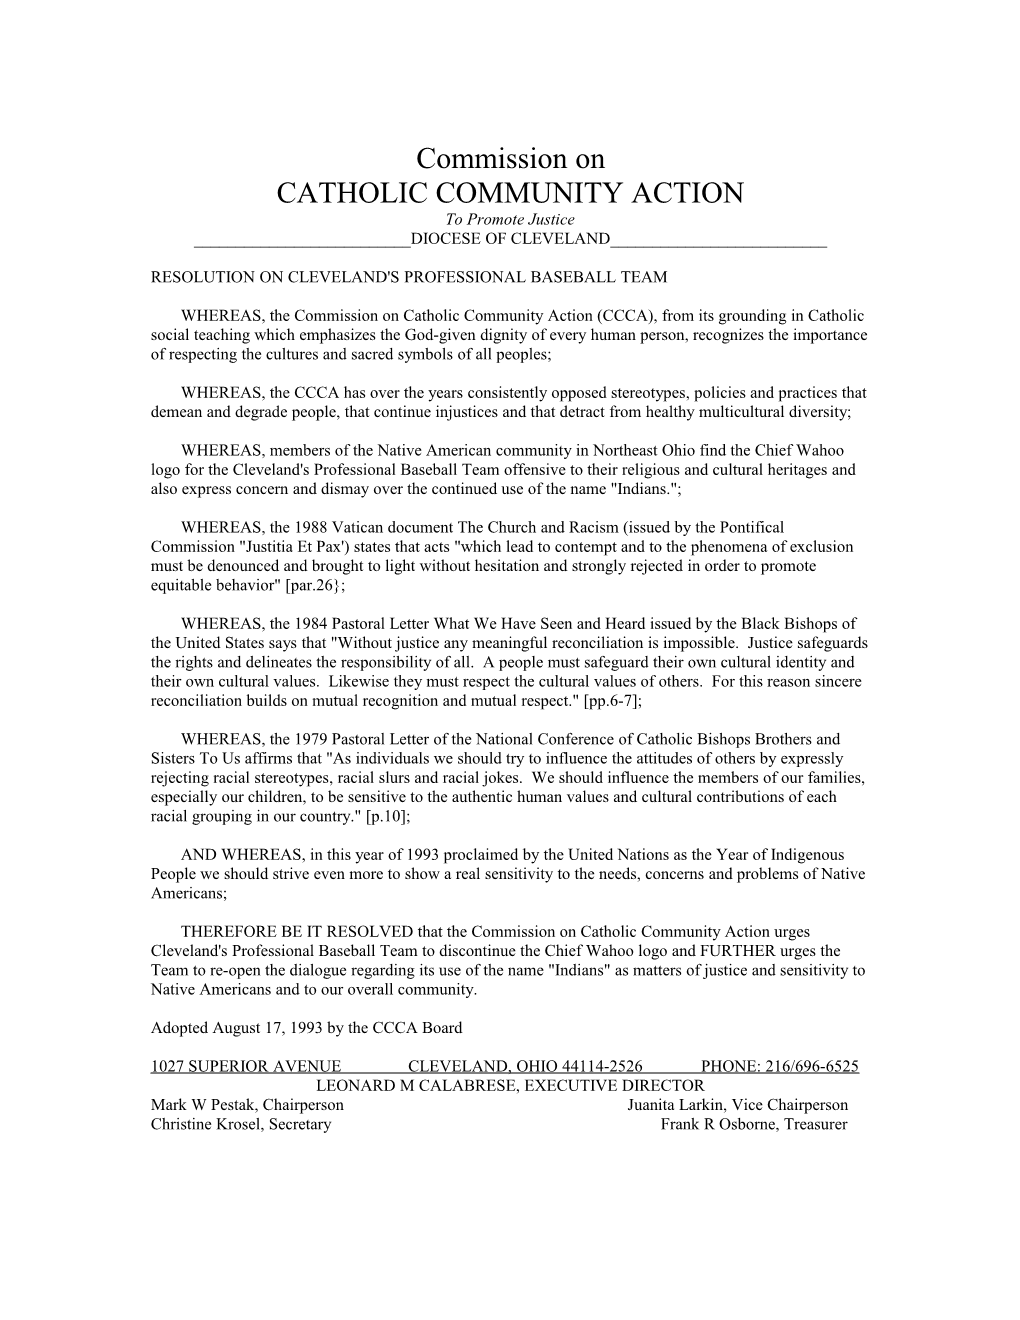 Catholic Community Action